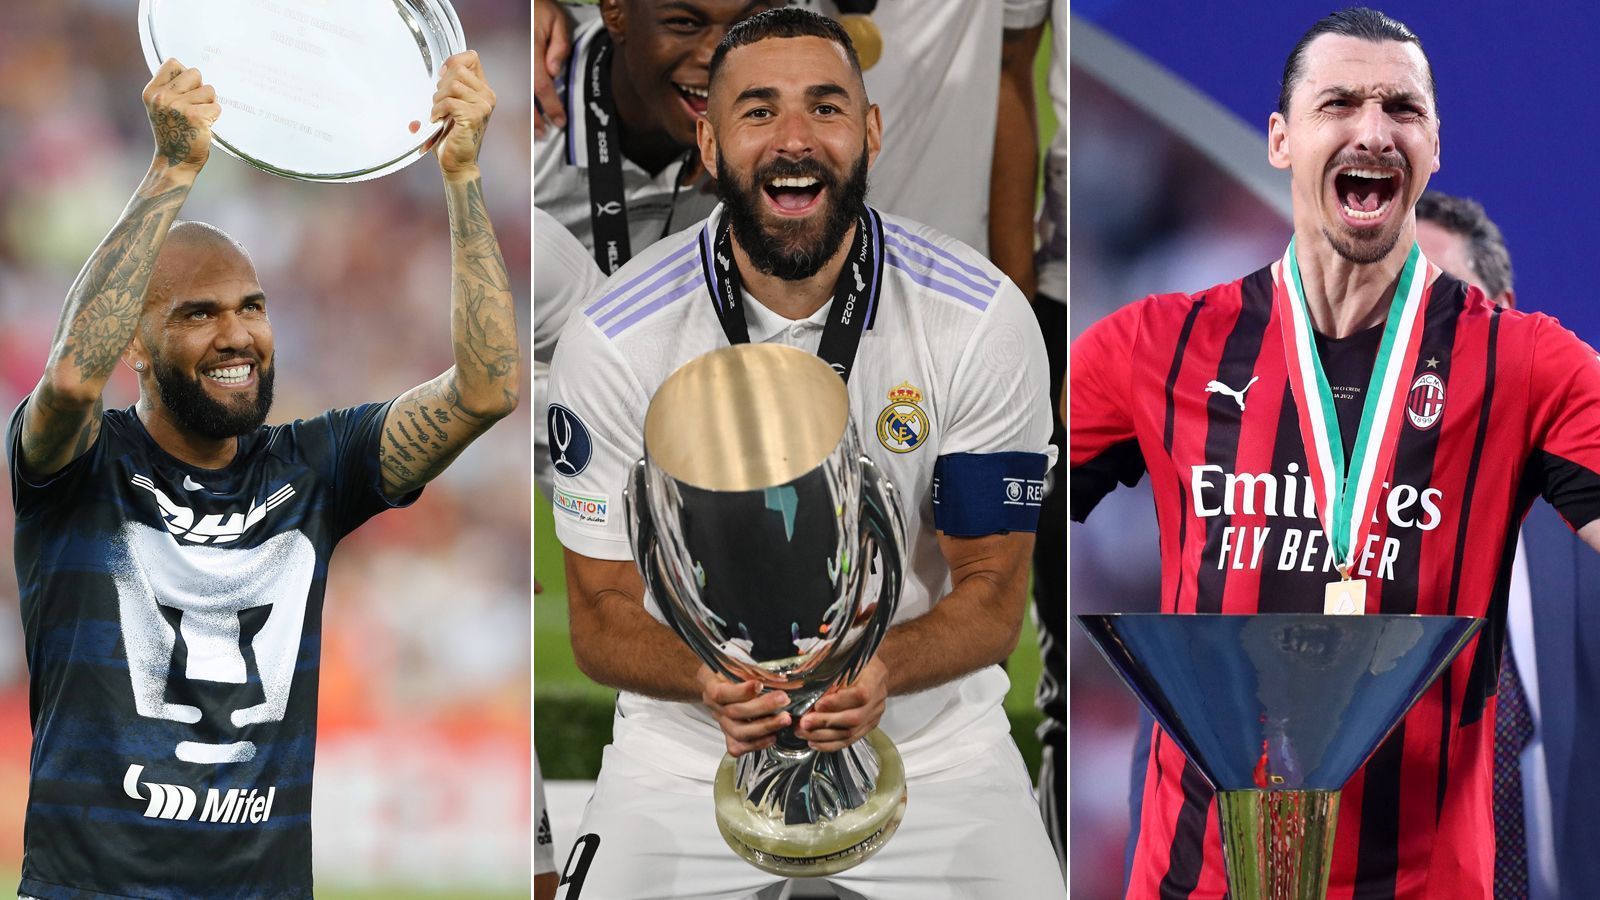 
                <strong>Benzema und Co.: Die erfolgreichsten Spieler der Welt</strong><br>
                Real Madrid hat den europäischen Supercup gewonnen und Karim Benzema (Bildmitte) damit seine Titelsammlung erweitert. Er gehört längst zu den Spieler mit den meisten Titeln im Weltfußball. ran zeigt die Top 10. (Stand: 12. August 2022/Quelle: sportbild.de)
              